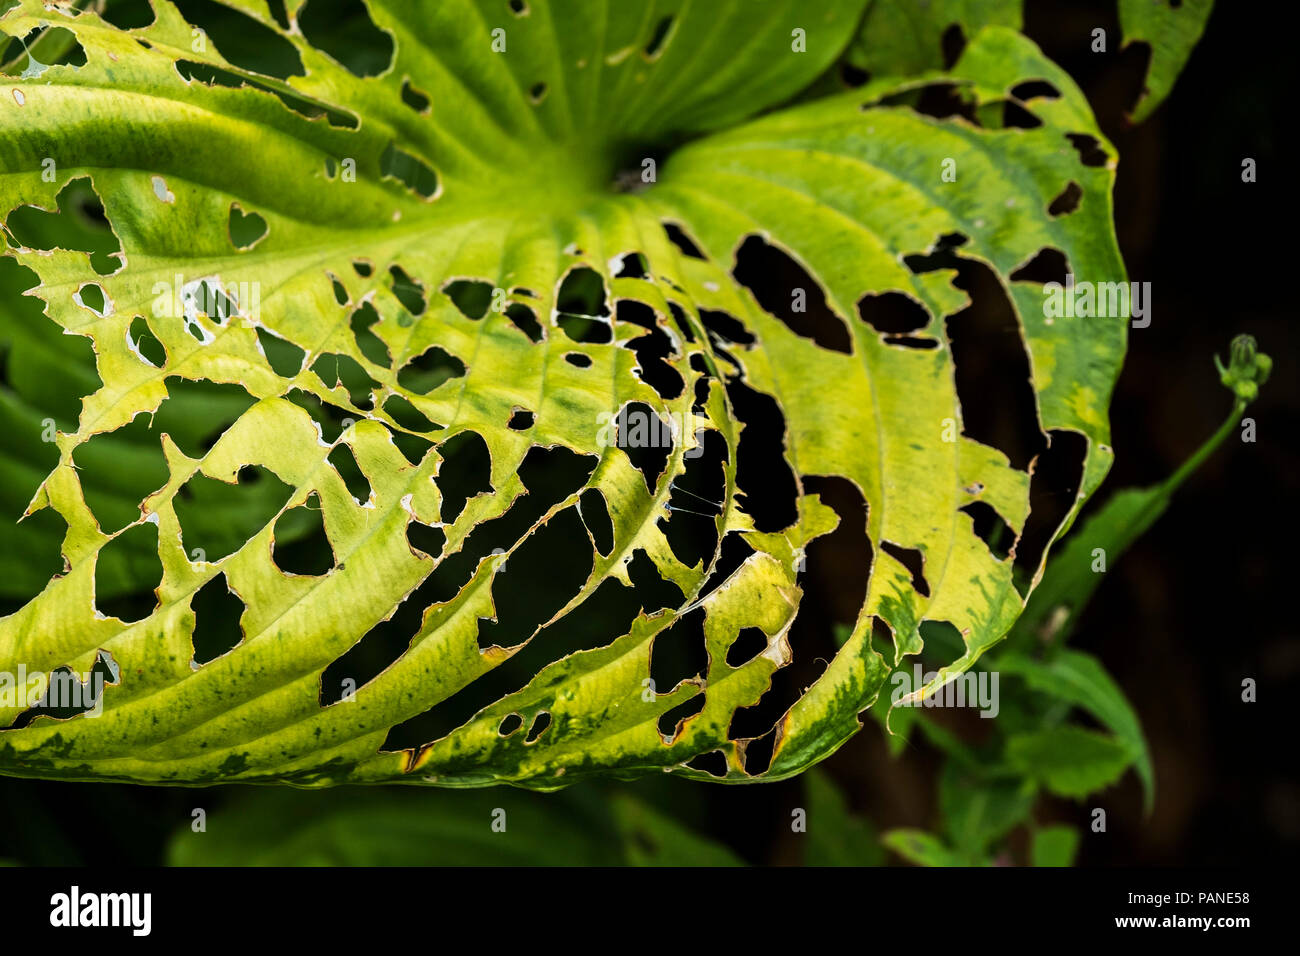 Les dégâts causés par les insectes nuisibles limaces insectes sur la feuille d'un Hosta plante. Banque D'Images